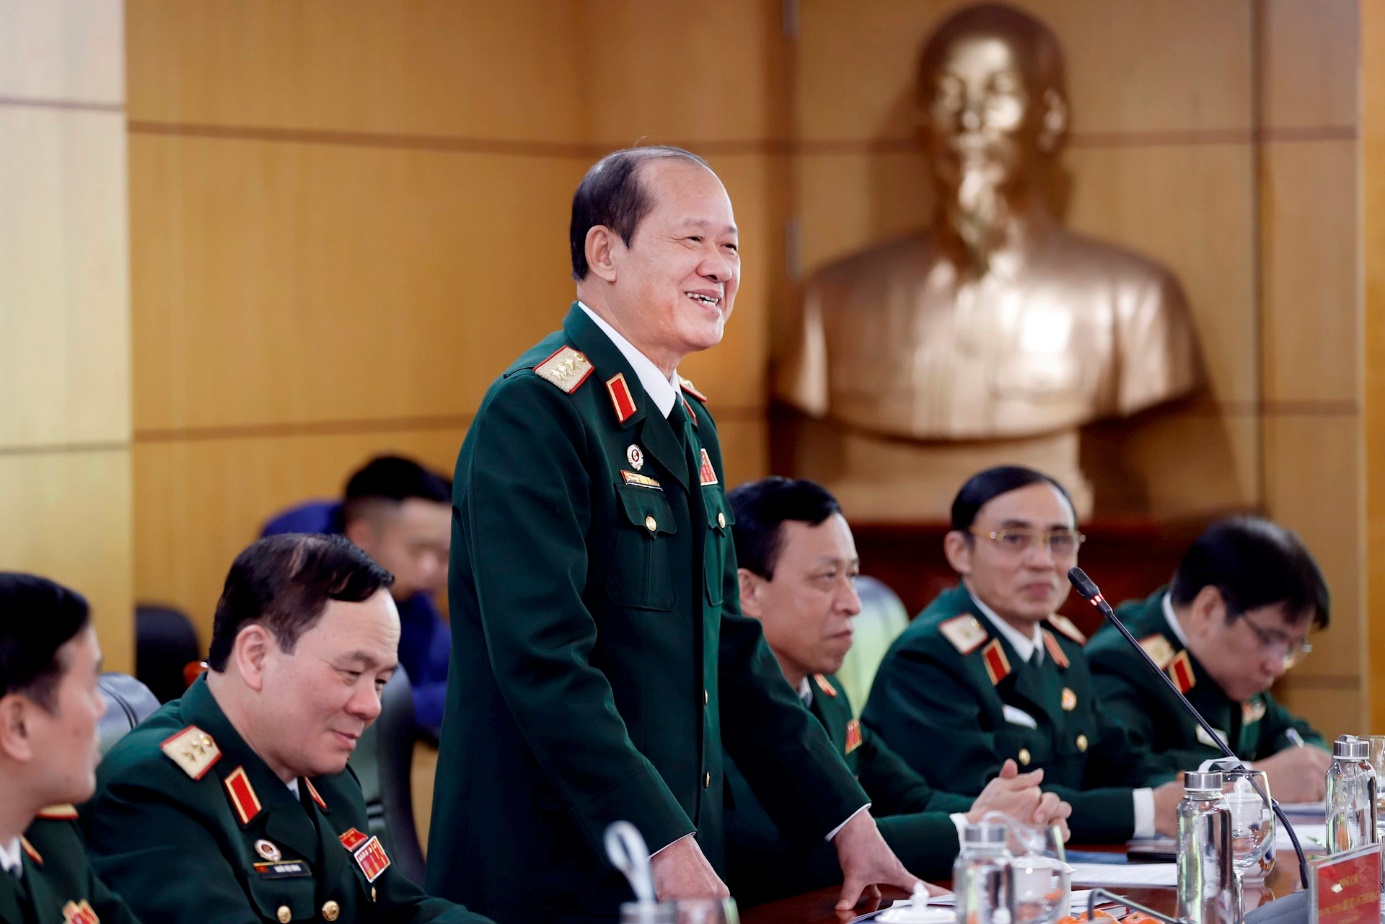 Bộ Tài nguyên và Môi trường, Hội Cựu chiến binh Việt Nam ký kết hợp tác trong ứng phó biến đổi khí hậu- Ảnh 2.